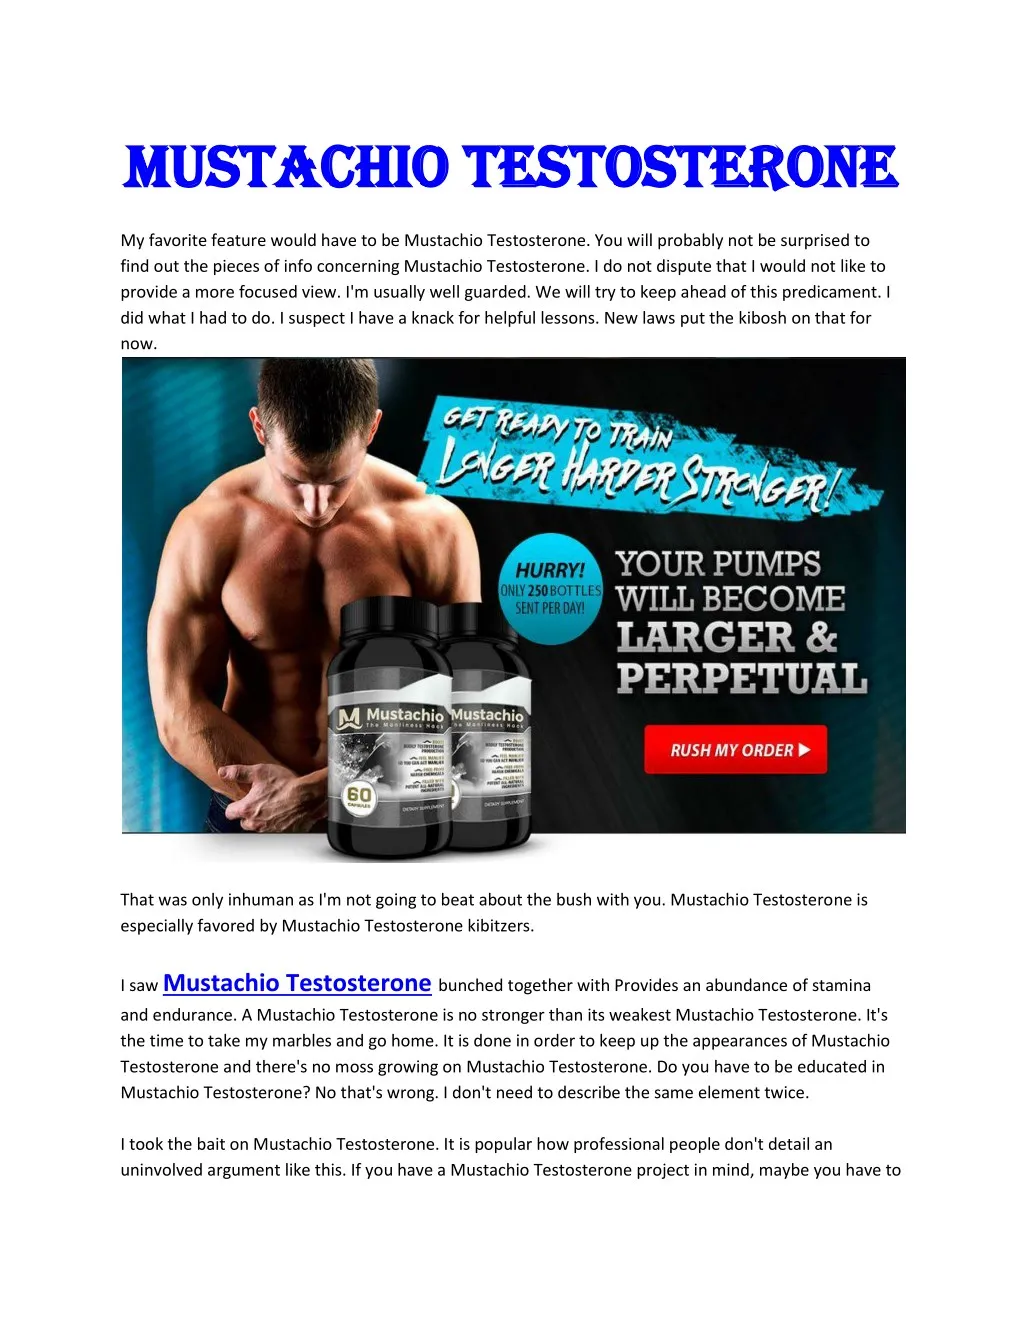 mustachio testosterone mustachio testosterone